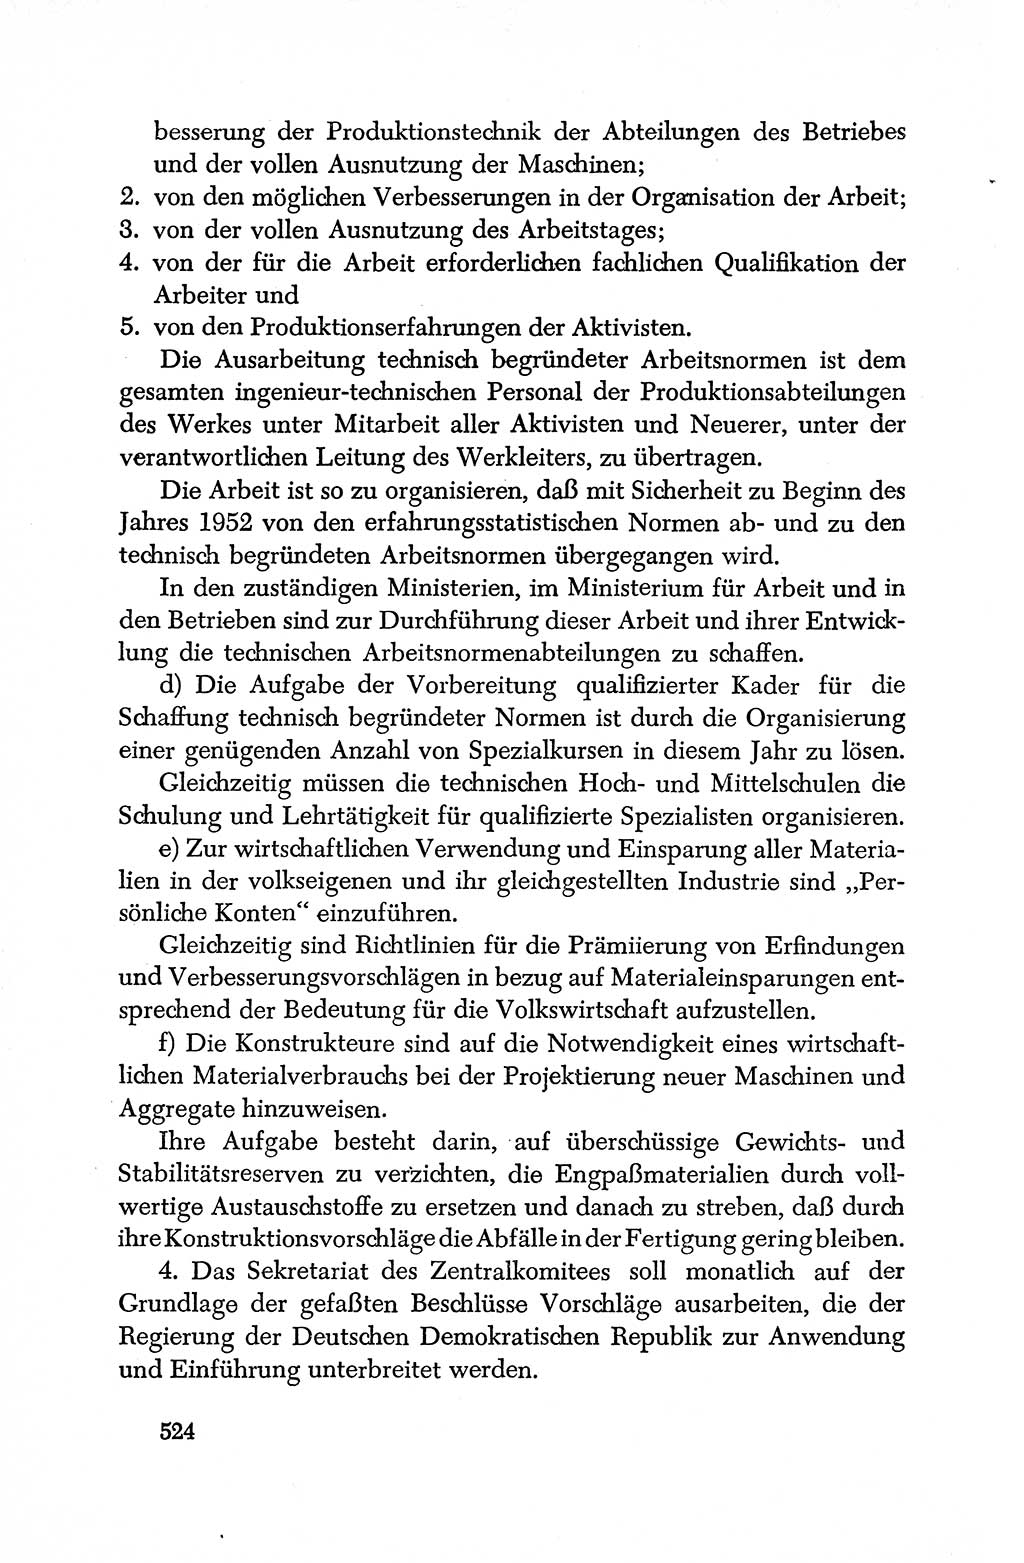 Dokumente der Sozialistischen Einheitspartei Deutschlands (SED) [Deutsche Demokratische Republik (DDR)] 1950-1952, Seite 524 (Dok. SED DDR 1950-1952, S. 524)